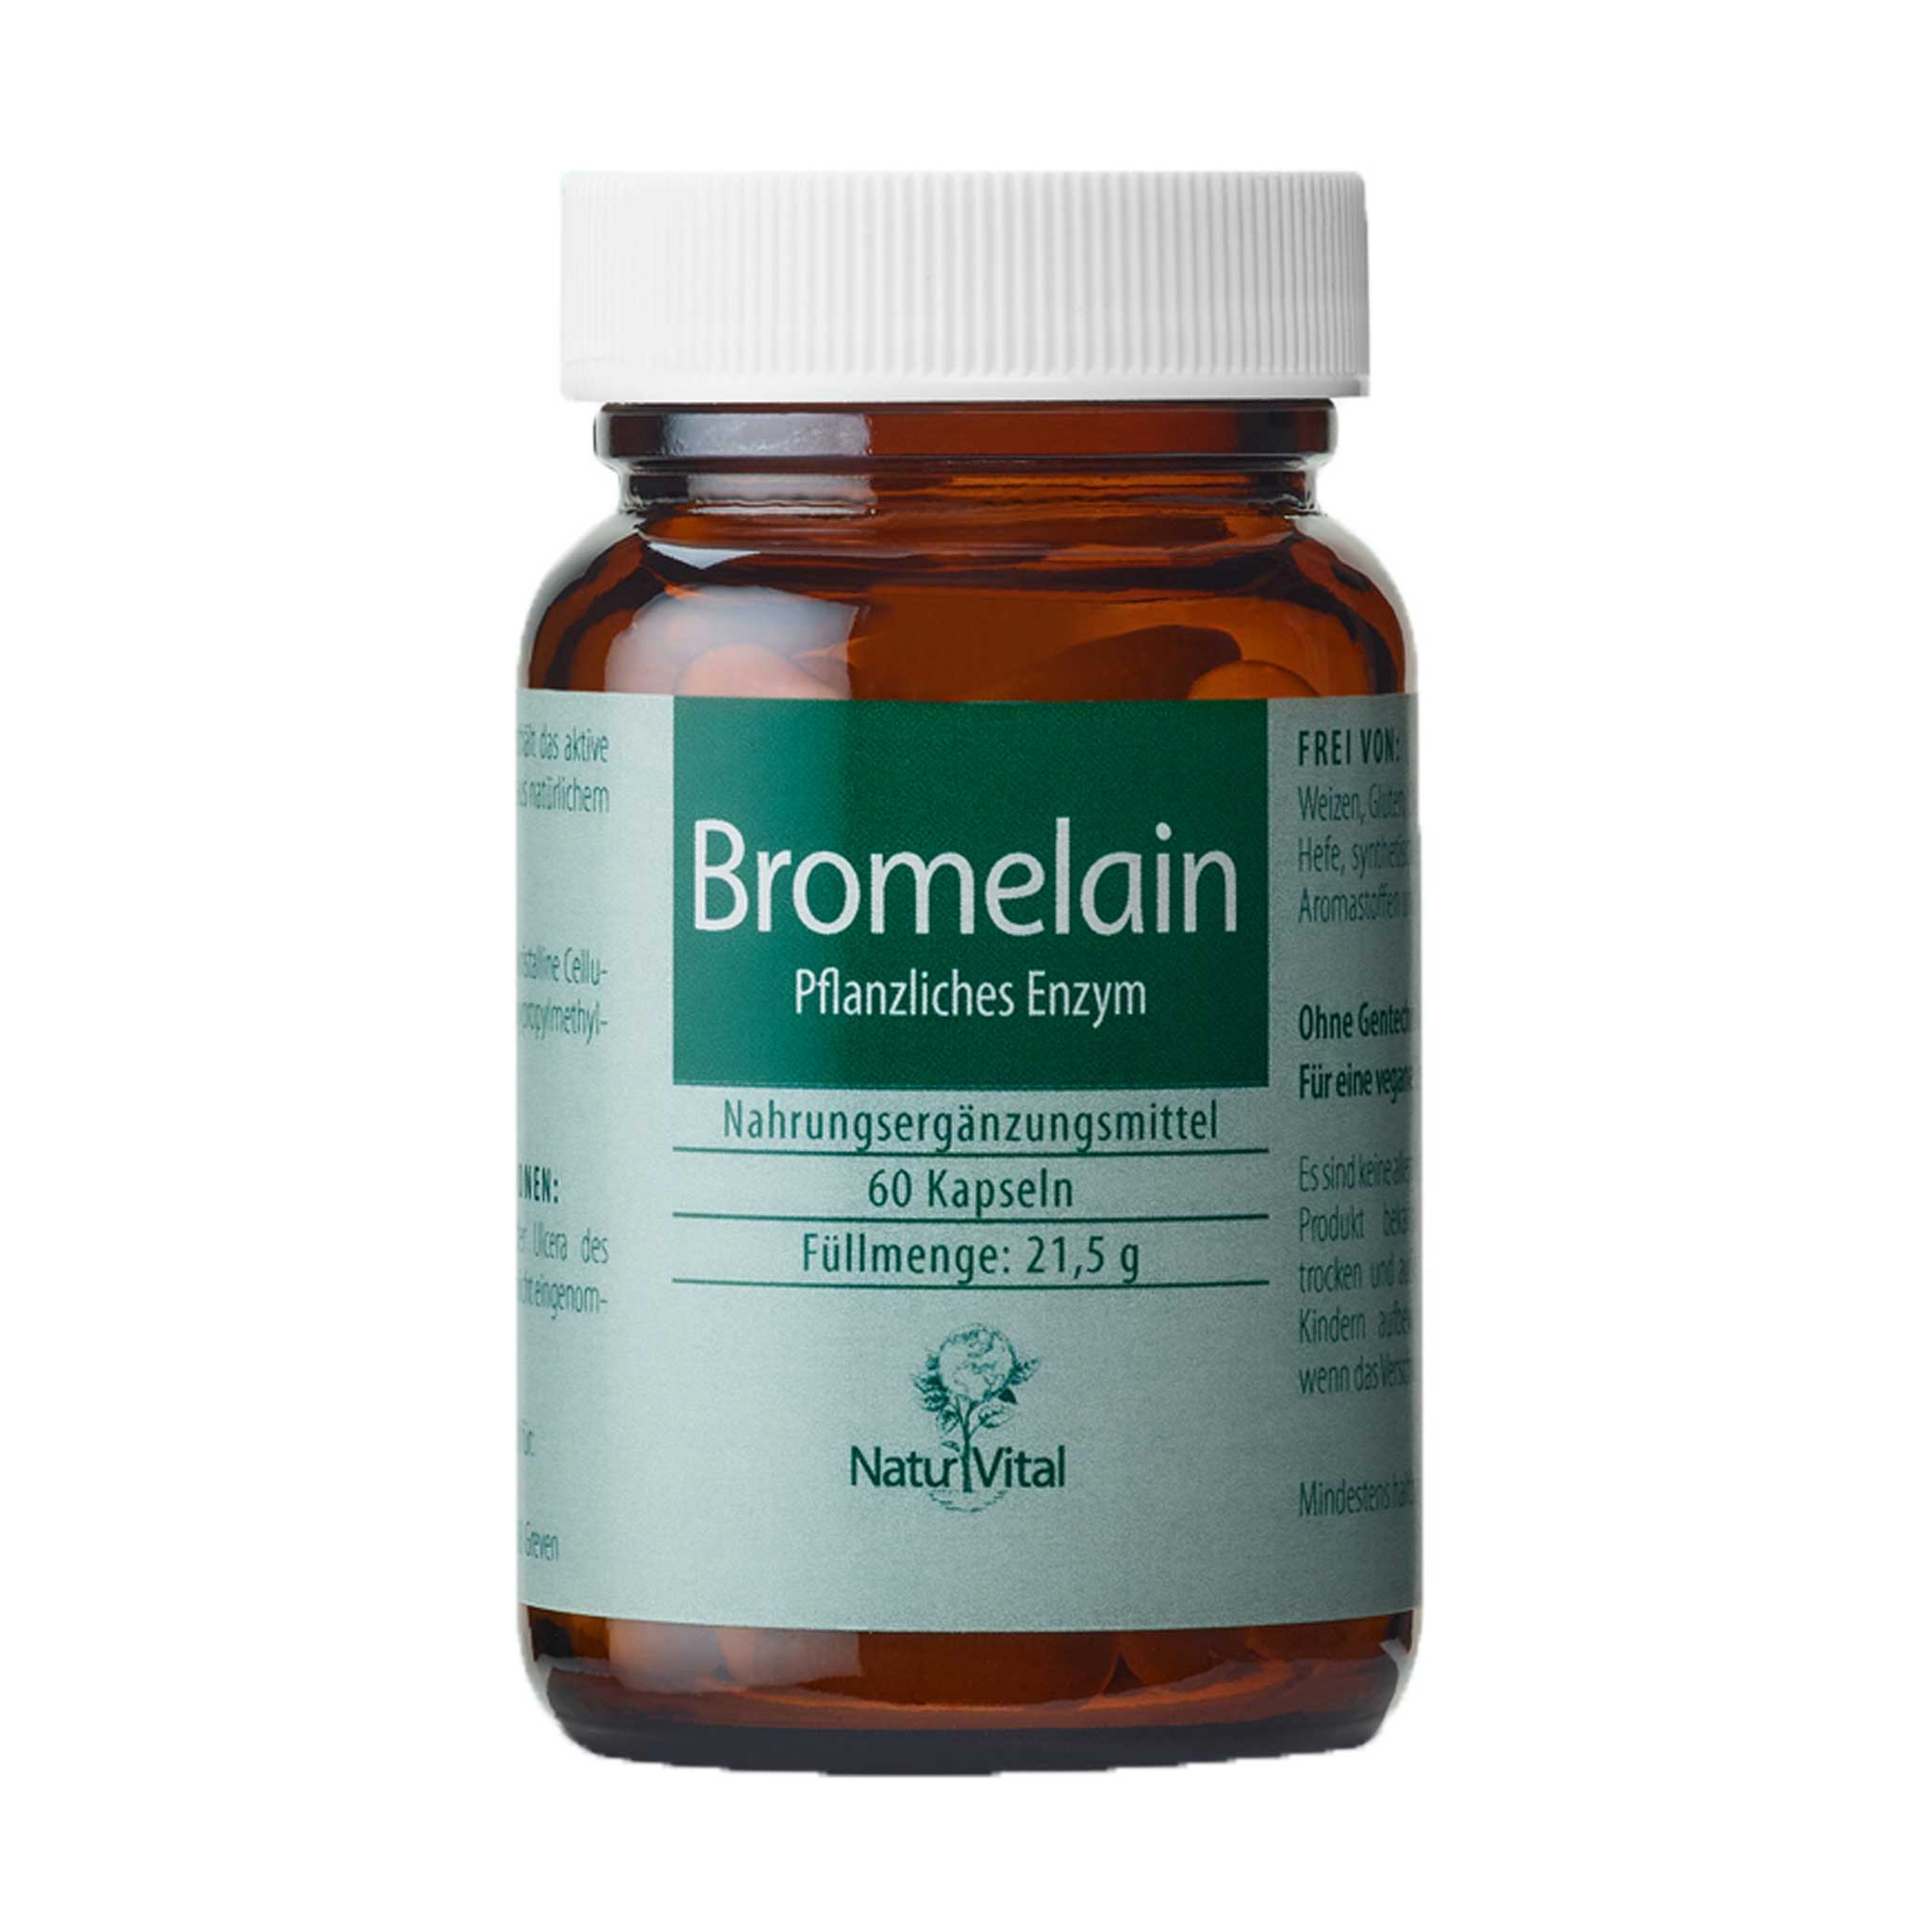 Bromelain pflanzliches Enzym von Natur Vital beinhaltet 60 Kapseln